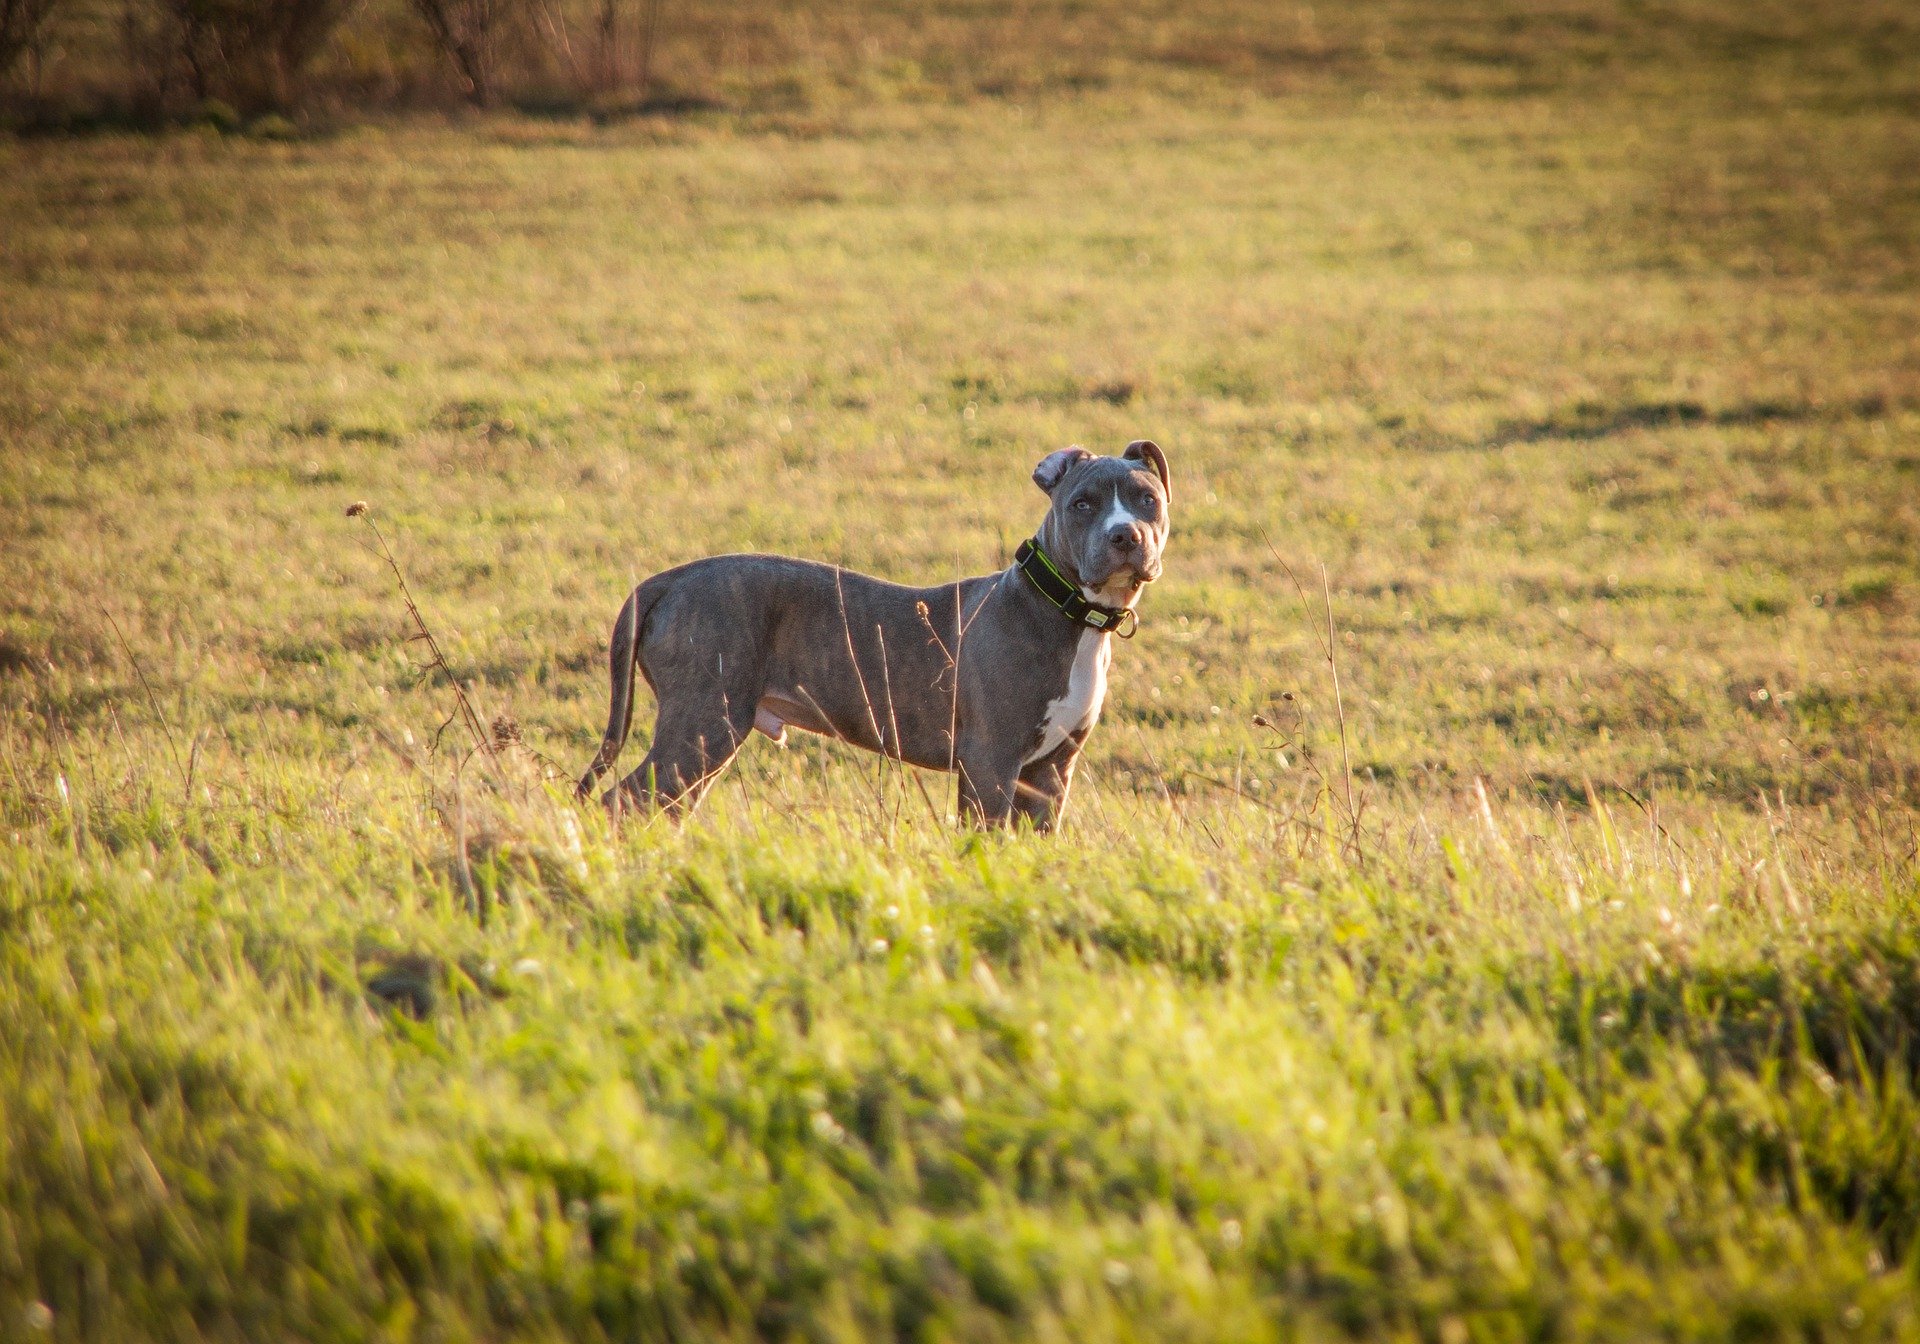 Der American Staffordshire Terrier gilt als die Hunderasse, die relativ gesund ist und bis zum Ende gute Kondition hat. Die Hunde sind stark, kräftig und muskulös.